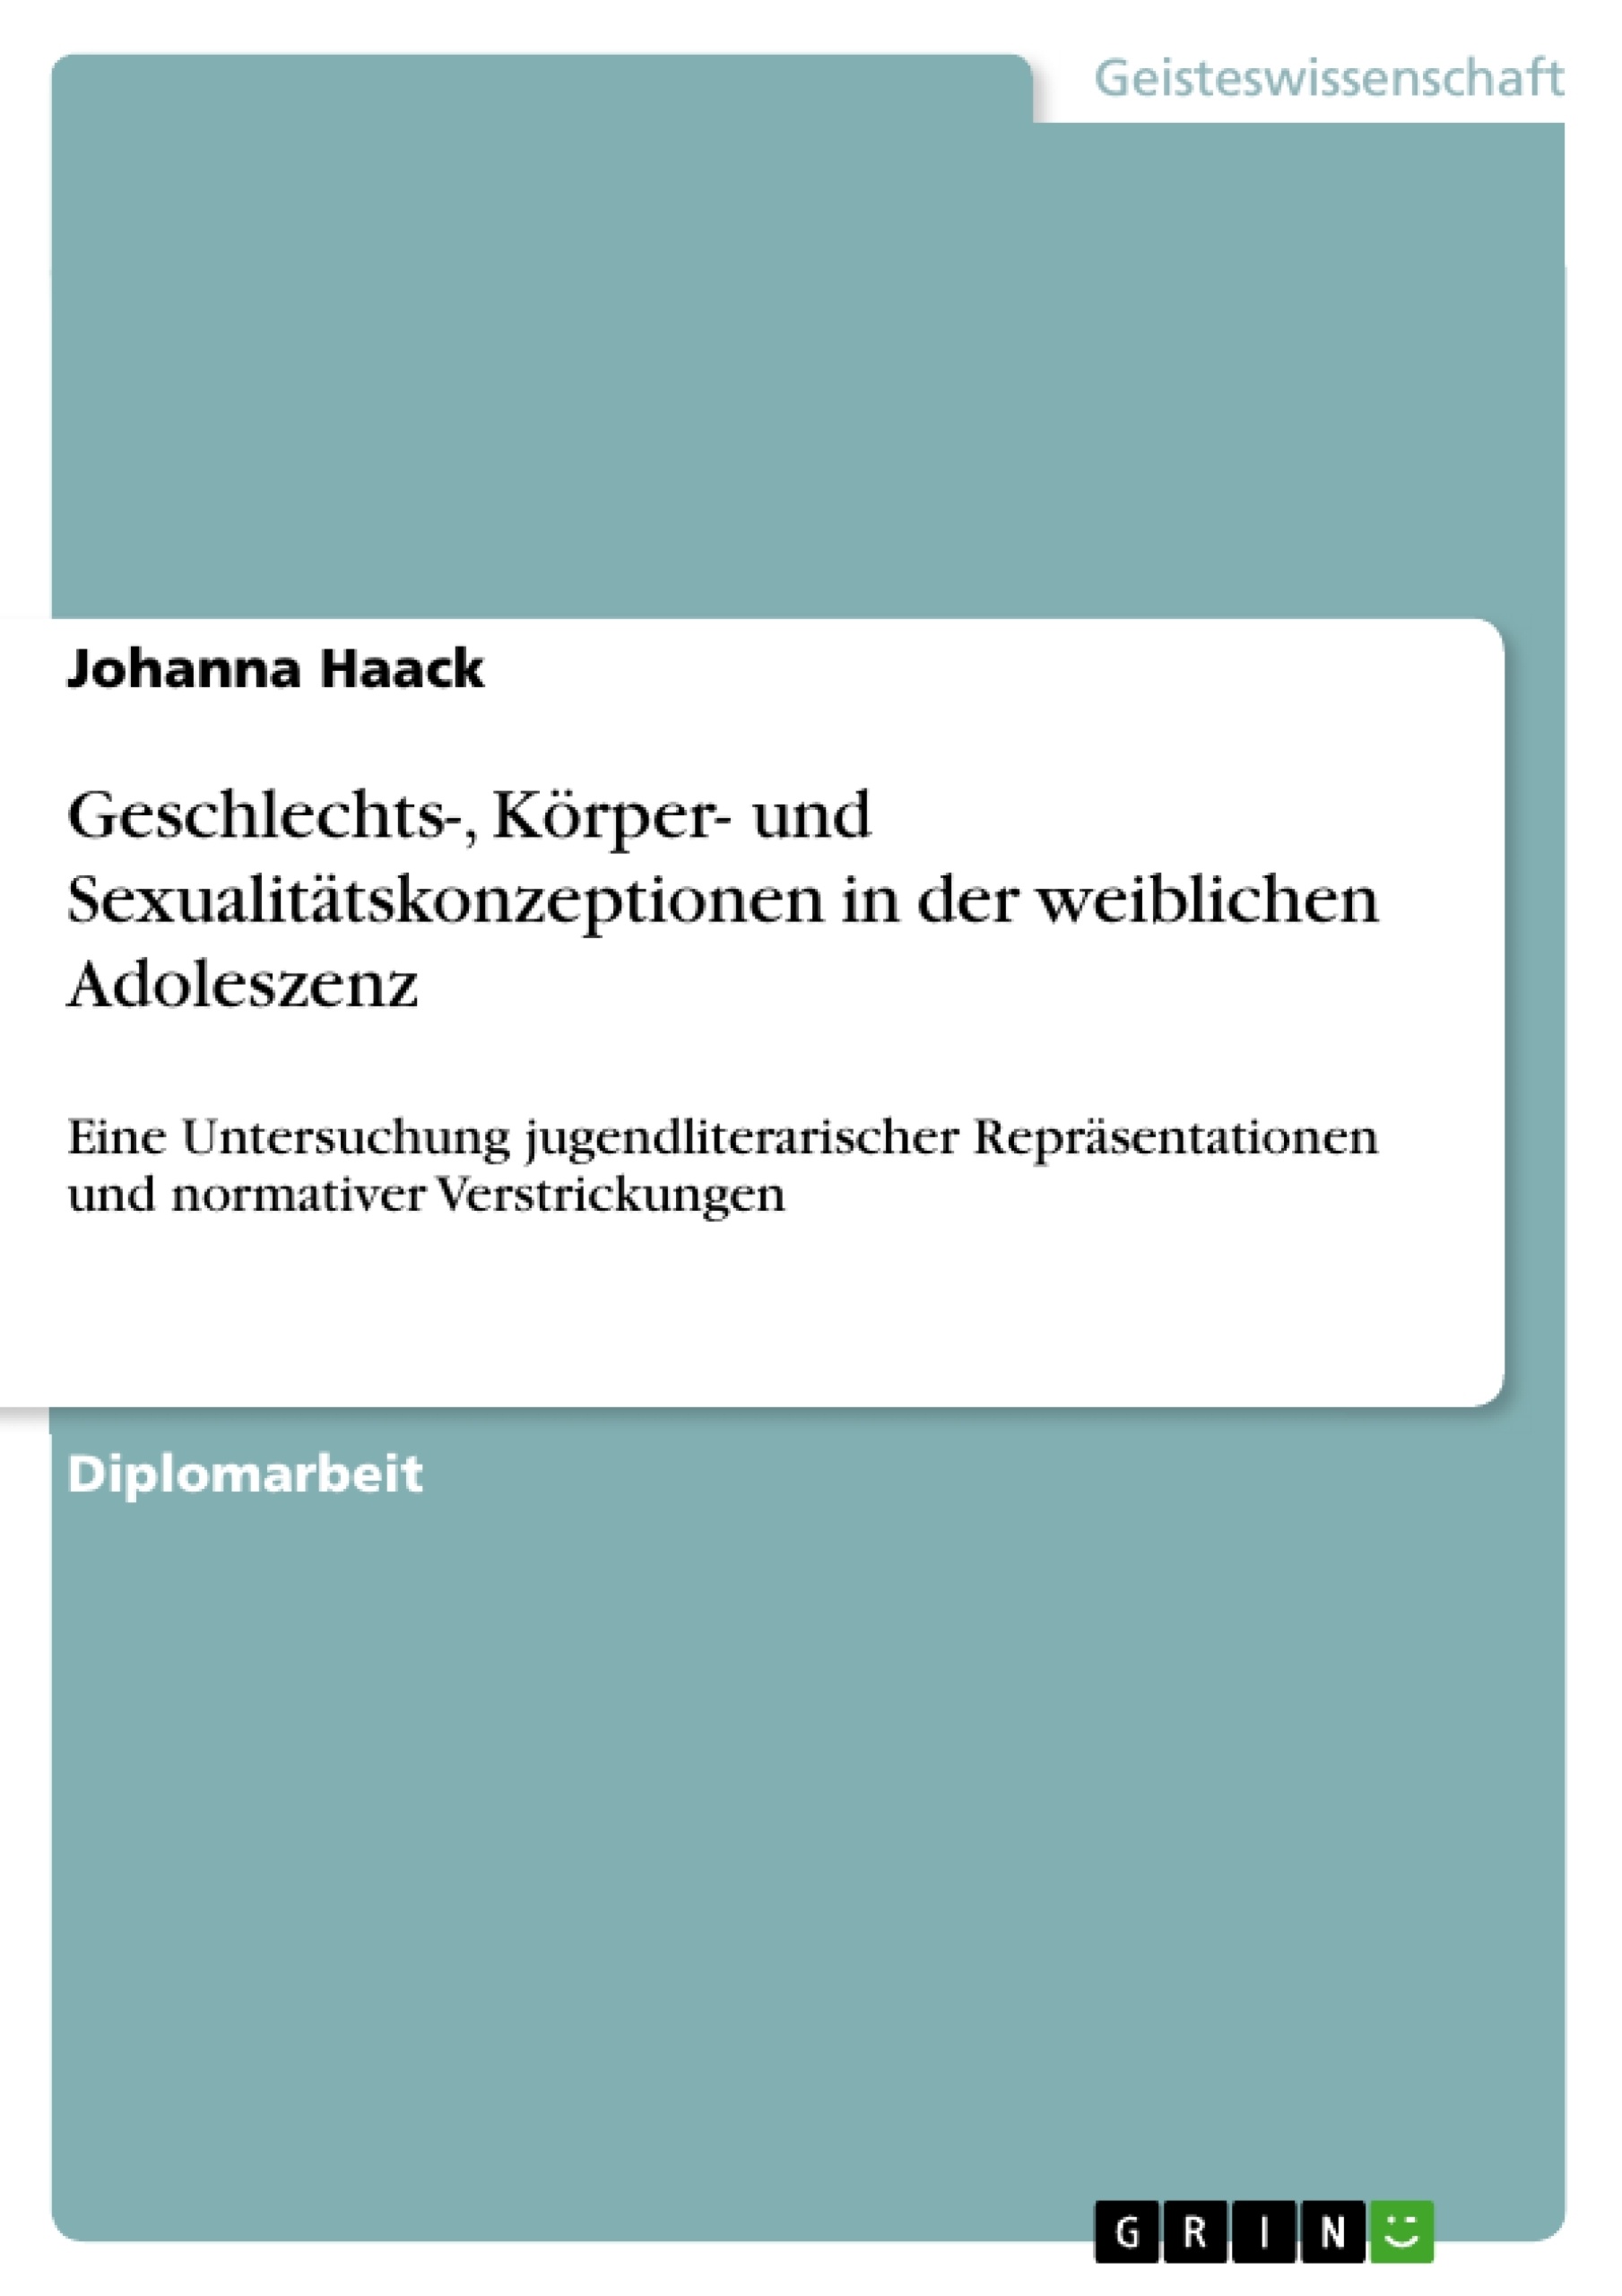 Title: Geschlechts-, Körper- und Sexualitätskonzeptionen in der weiblichen Adoleszenz